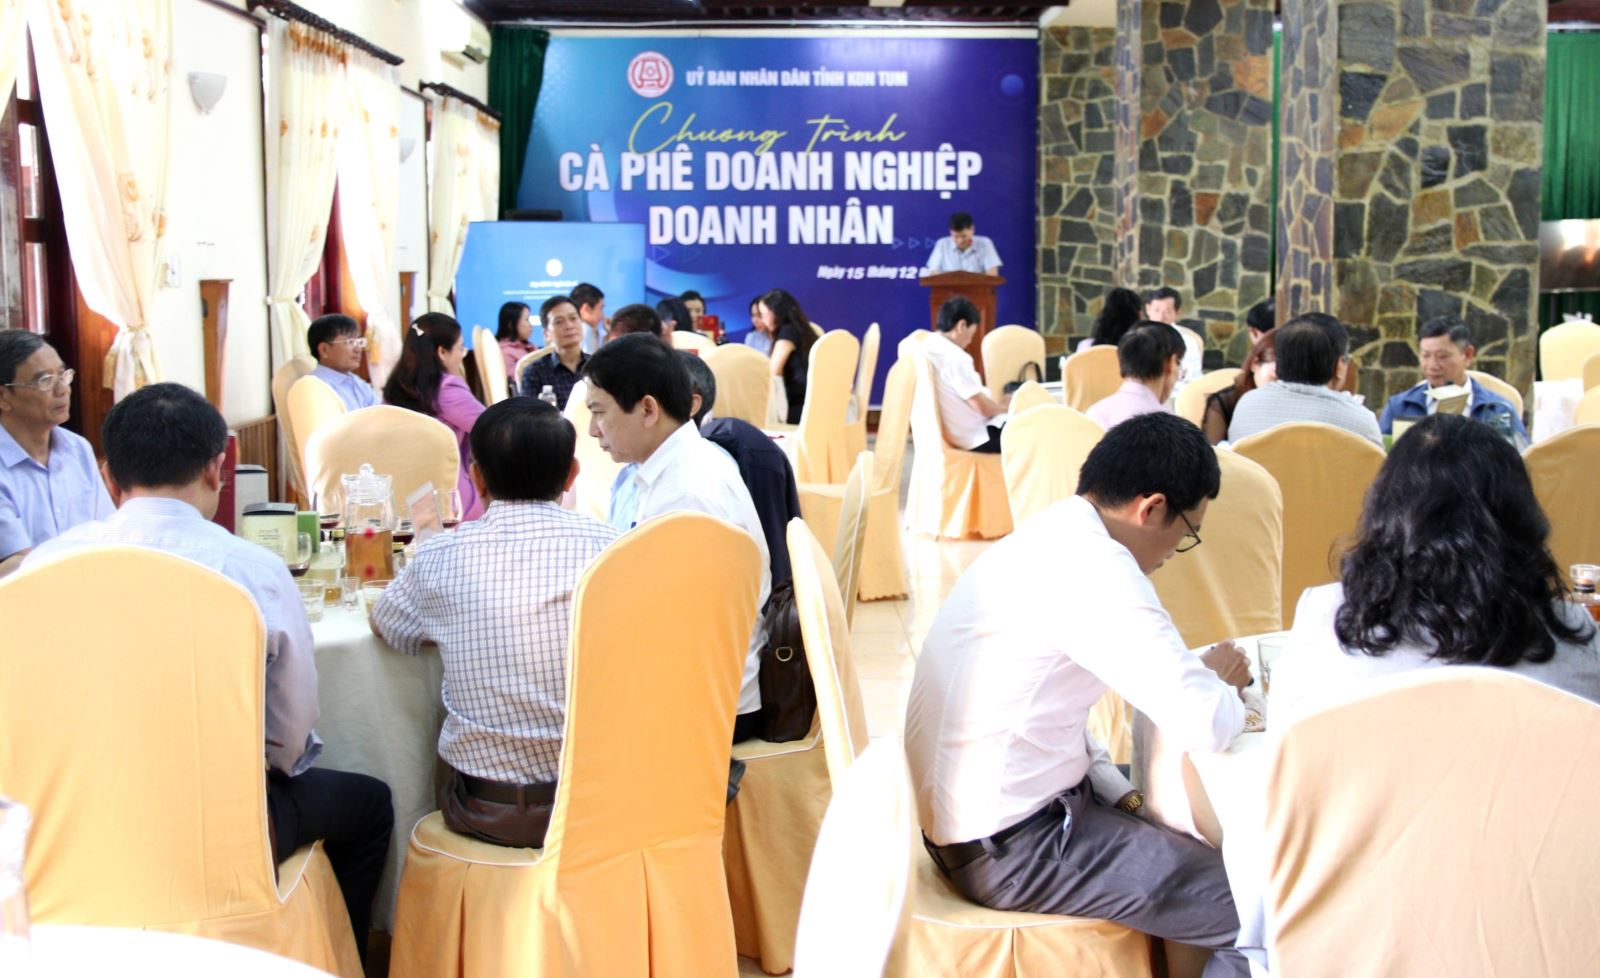 Chương trình Cà phê doanh nghiệp - doanh nhân tỉnh Ko Tum tháng 12